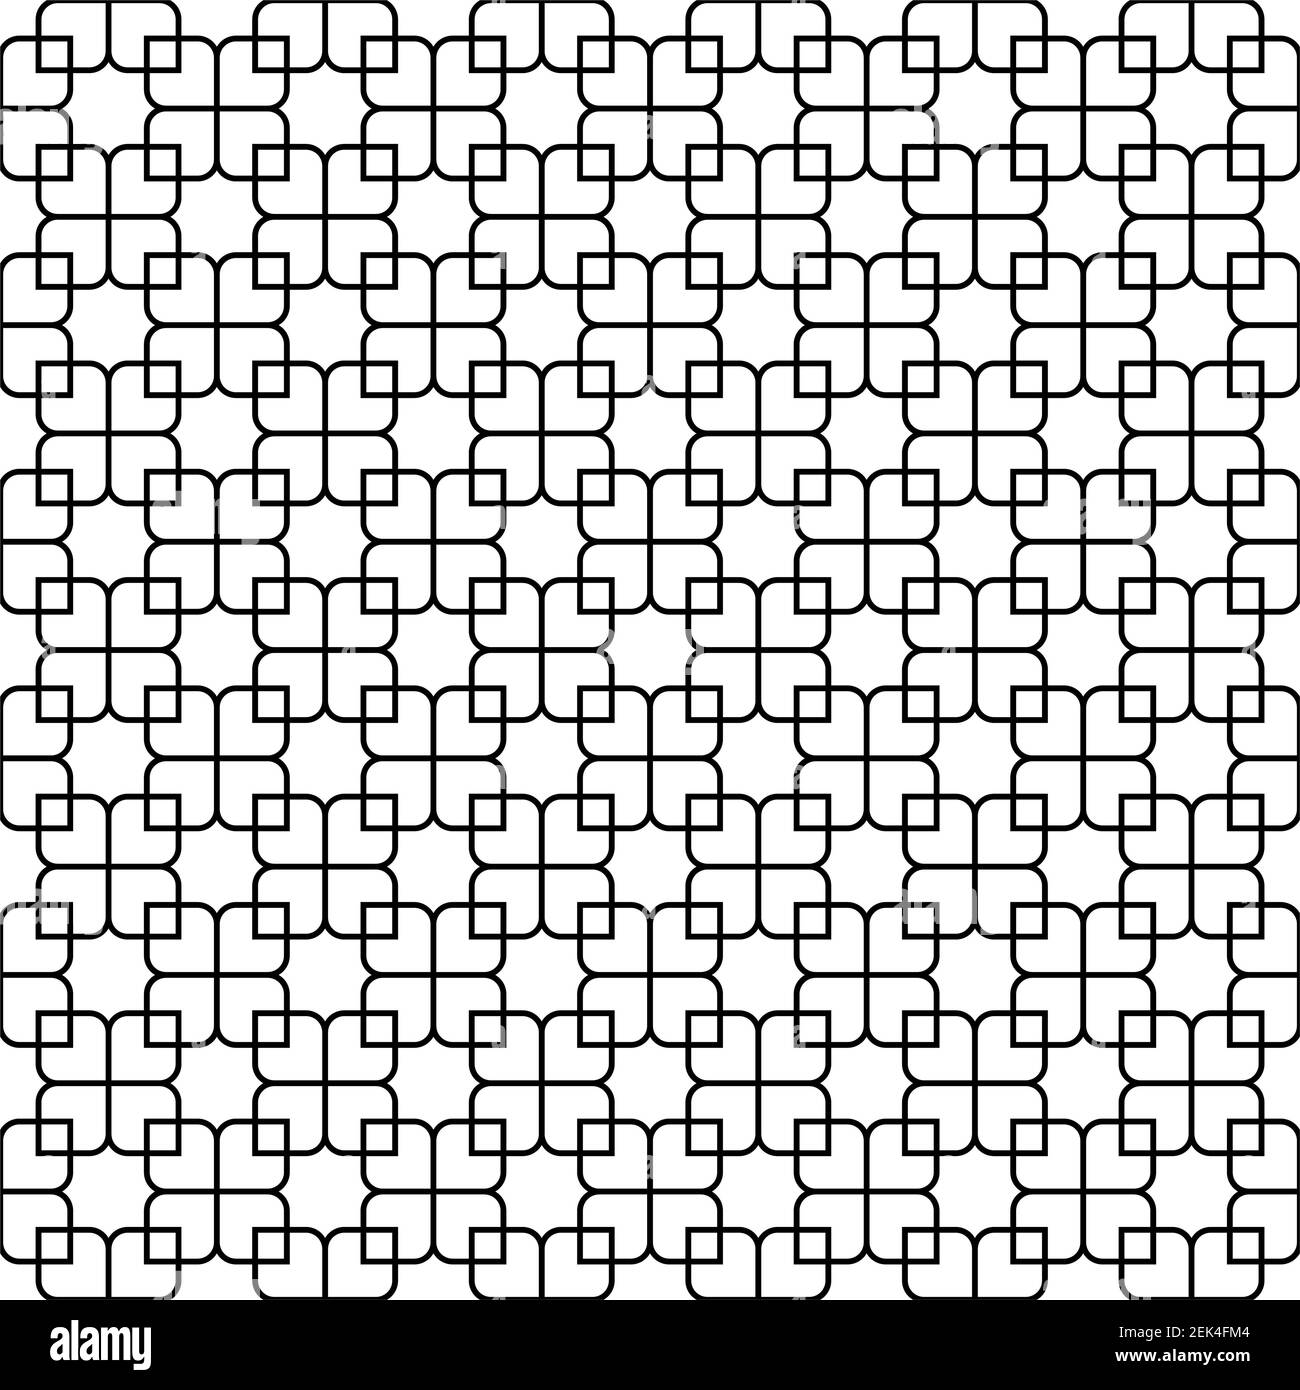 Decorazioni geometriche senza cuciture basate su arte islamica tradizionale.linee di colore nero.ottimo design per tessuto, tessuto, copertina, carta da imballaggio, sfondo. Averag Illustrazione Vettoriale